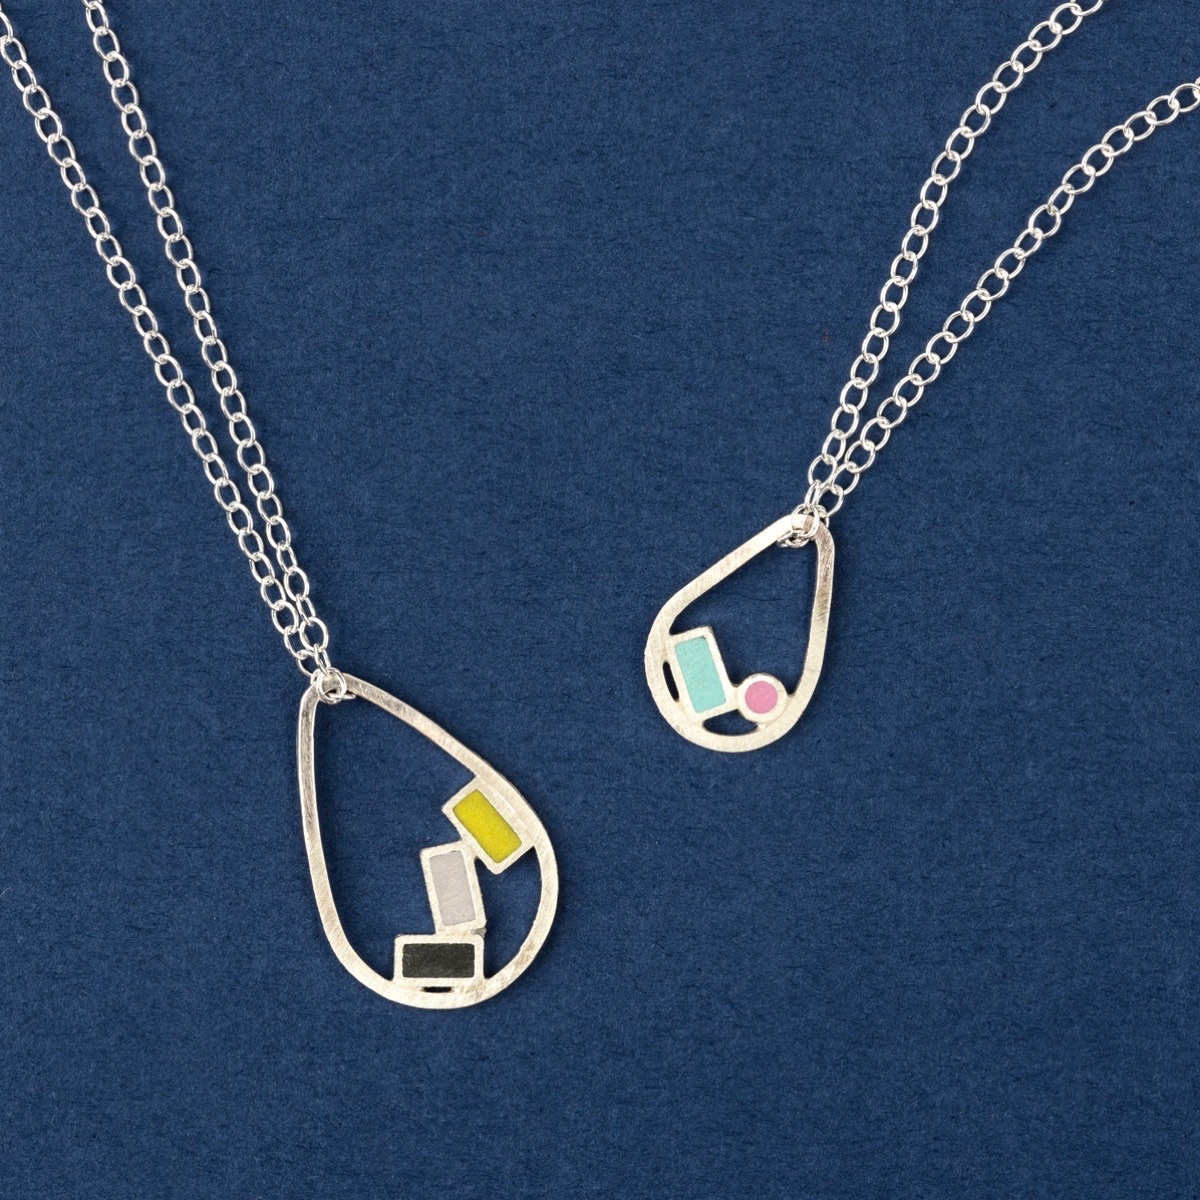 Colour block circle pendant necklaces by Colour Designs